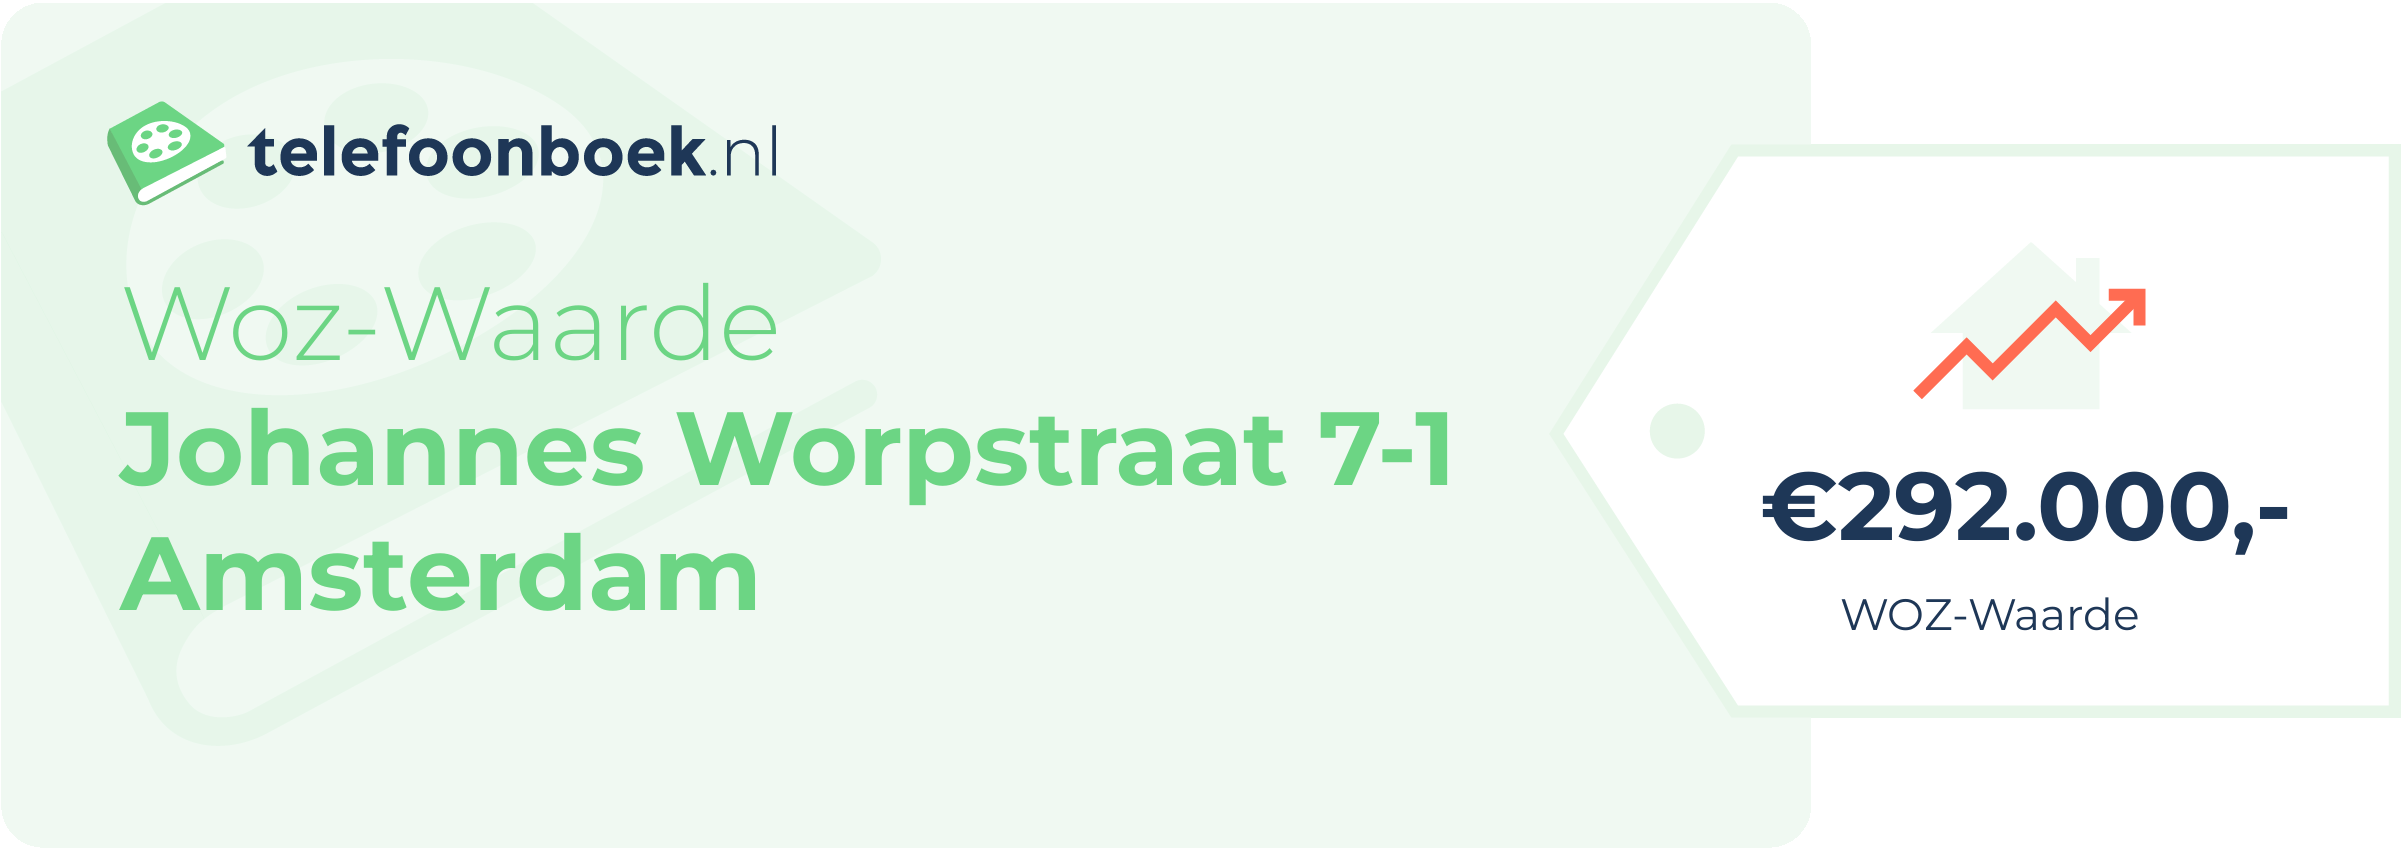 WOZ-waarde Johannes Worpstraat 7-1 Amsterdam